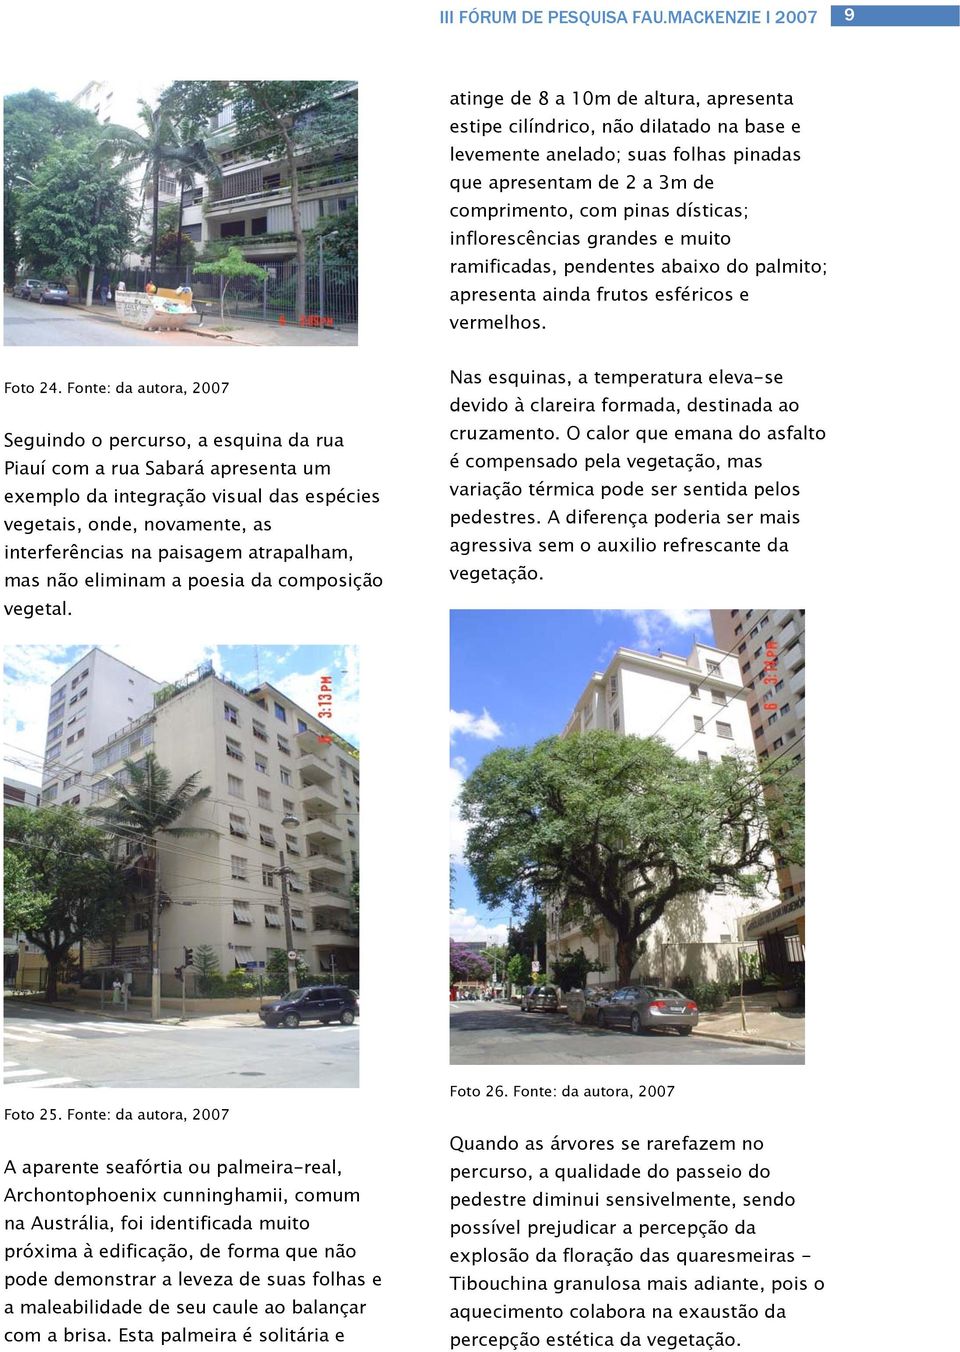 Fonte: da autora, 2007 Seguindo o percurso, a esquina da rua Piauí com a rua Sabará apresenta um exemplo da integração visual das espécies vegetais, onde, novamente, as interferências na paisagem